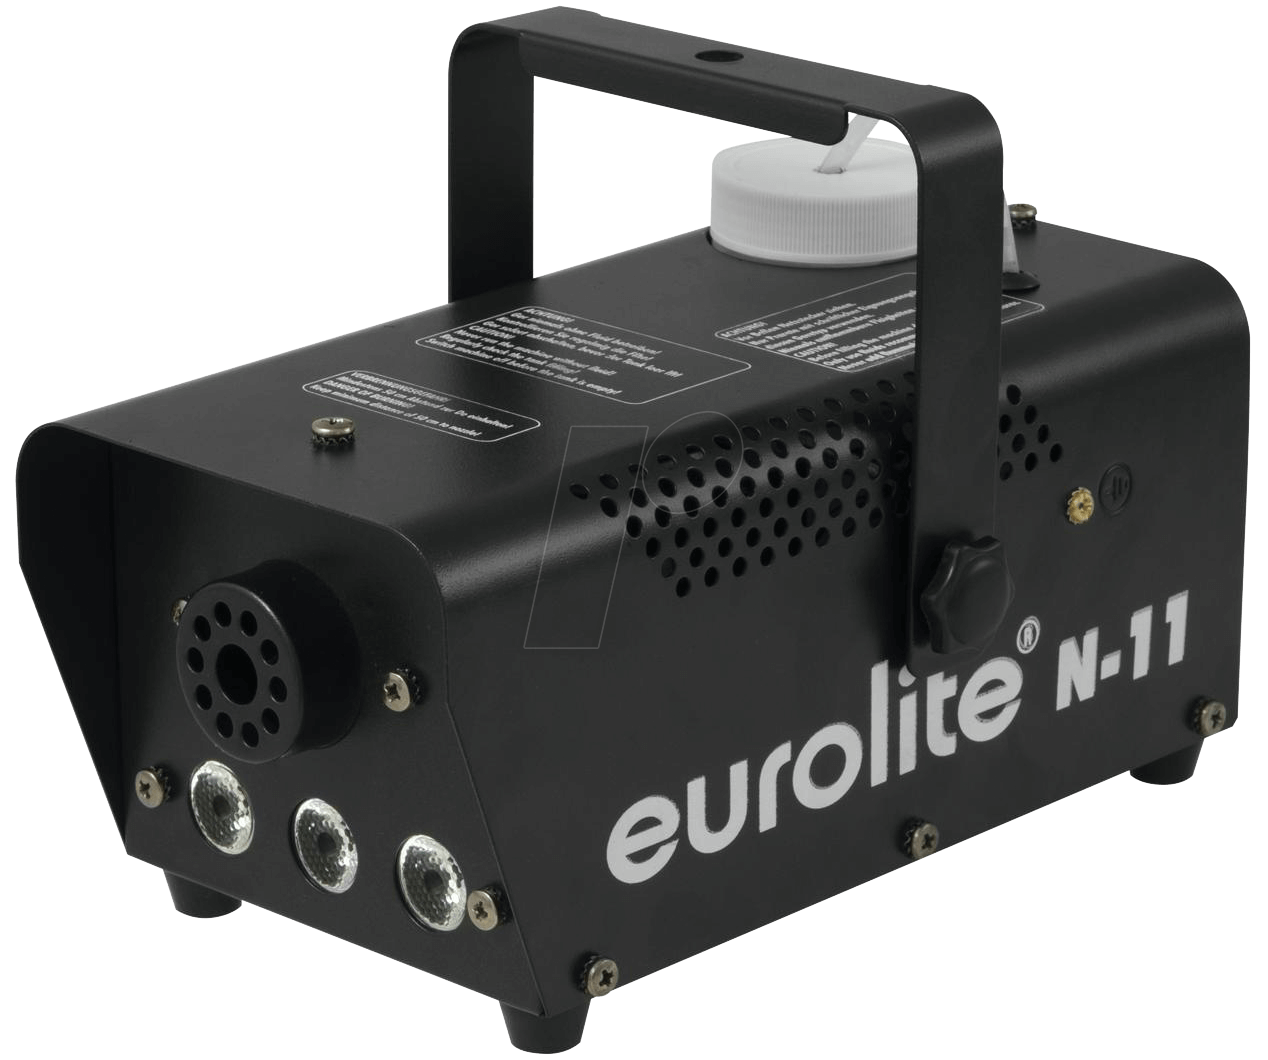 EURO 51701958 - Nebelmaschine, N11, amber LED, 14 m³/min, 400 W von Eurolite